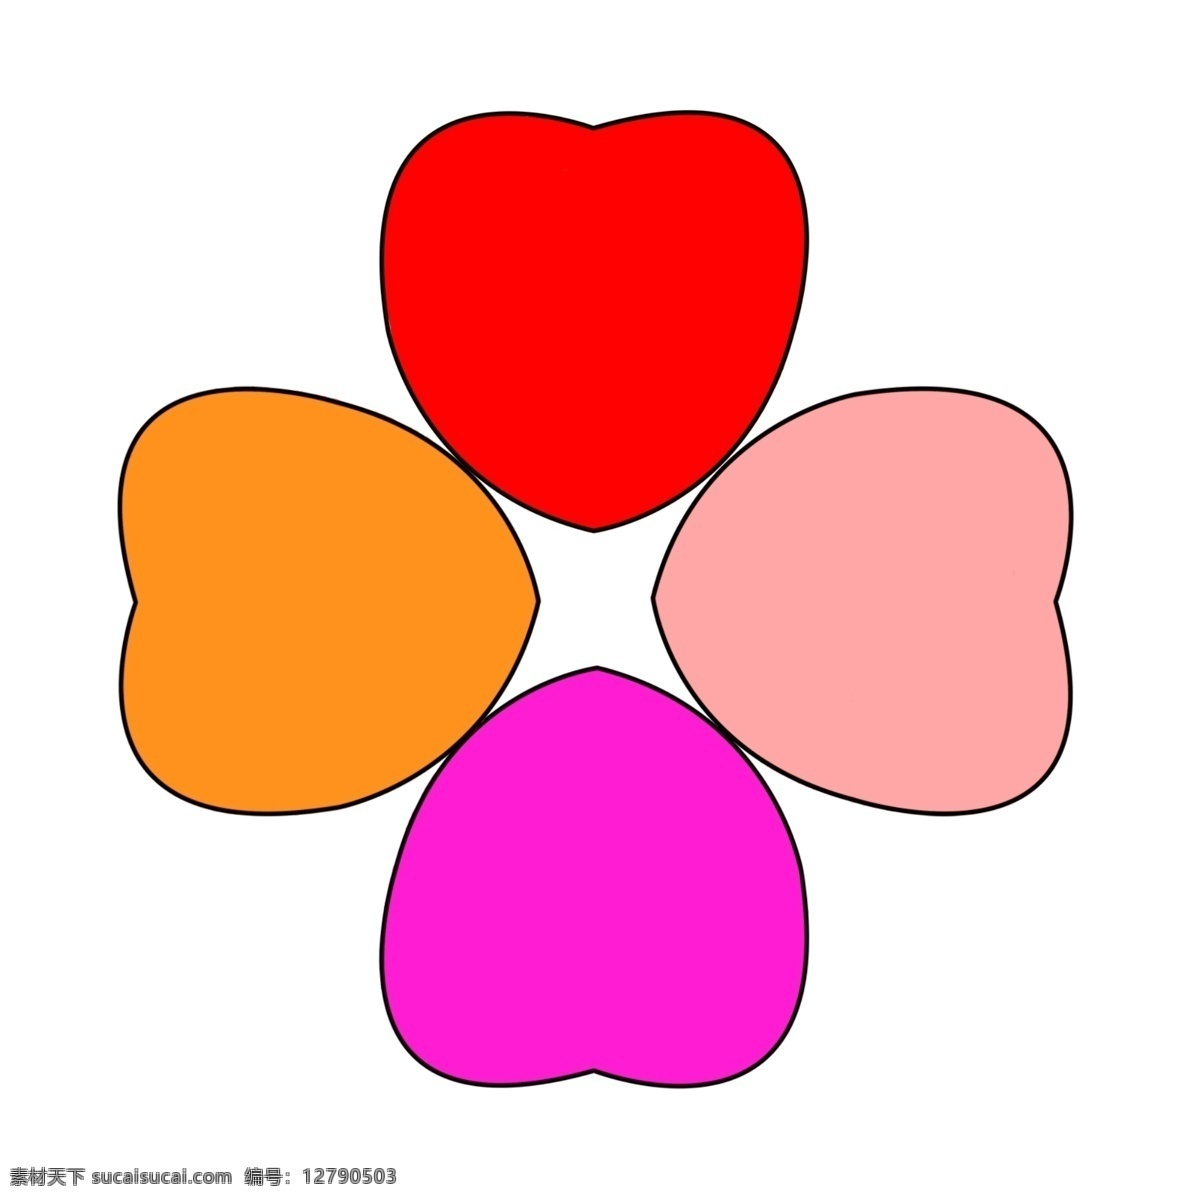 四 种 颜色 心 组成 花 心组成的花 四颗心 四种颜色的心 心连心 四颗心心连心